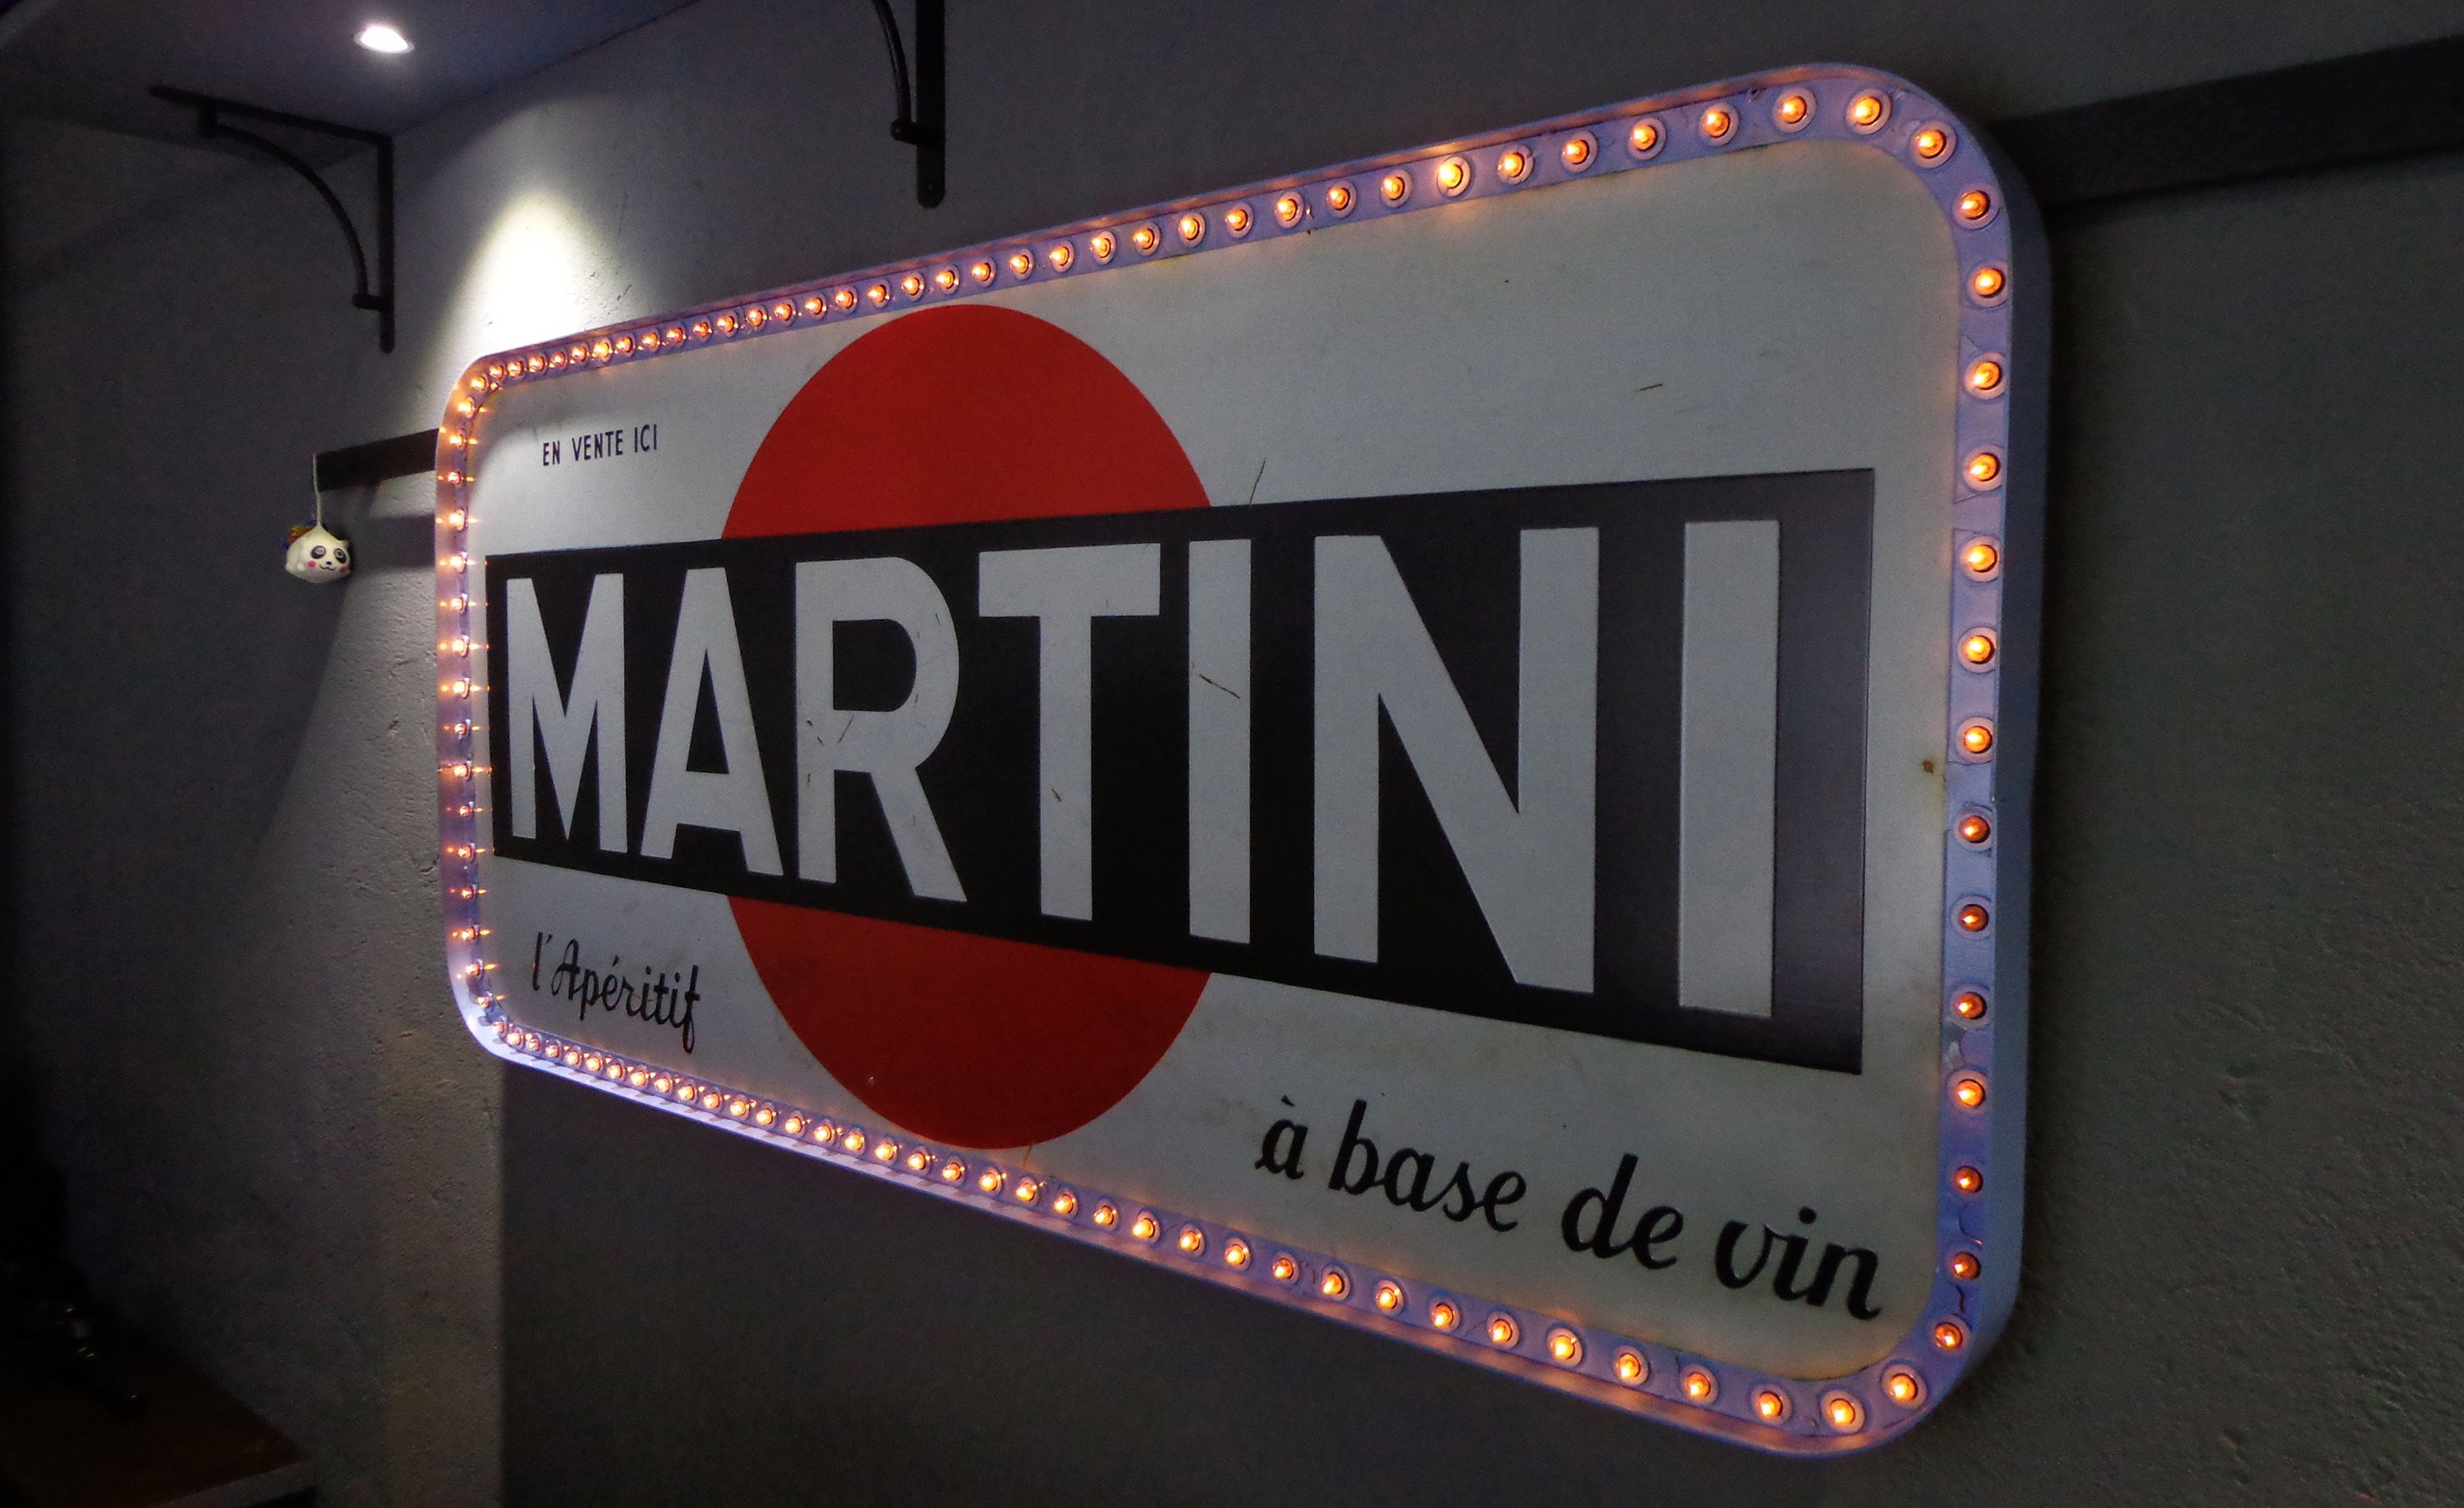 vintage дома декор дизайн редкость для стиль lighting ресторана вывеска мартини 1957 sign martini освещение лофт